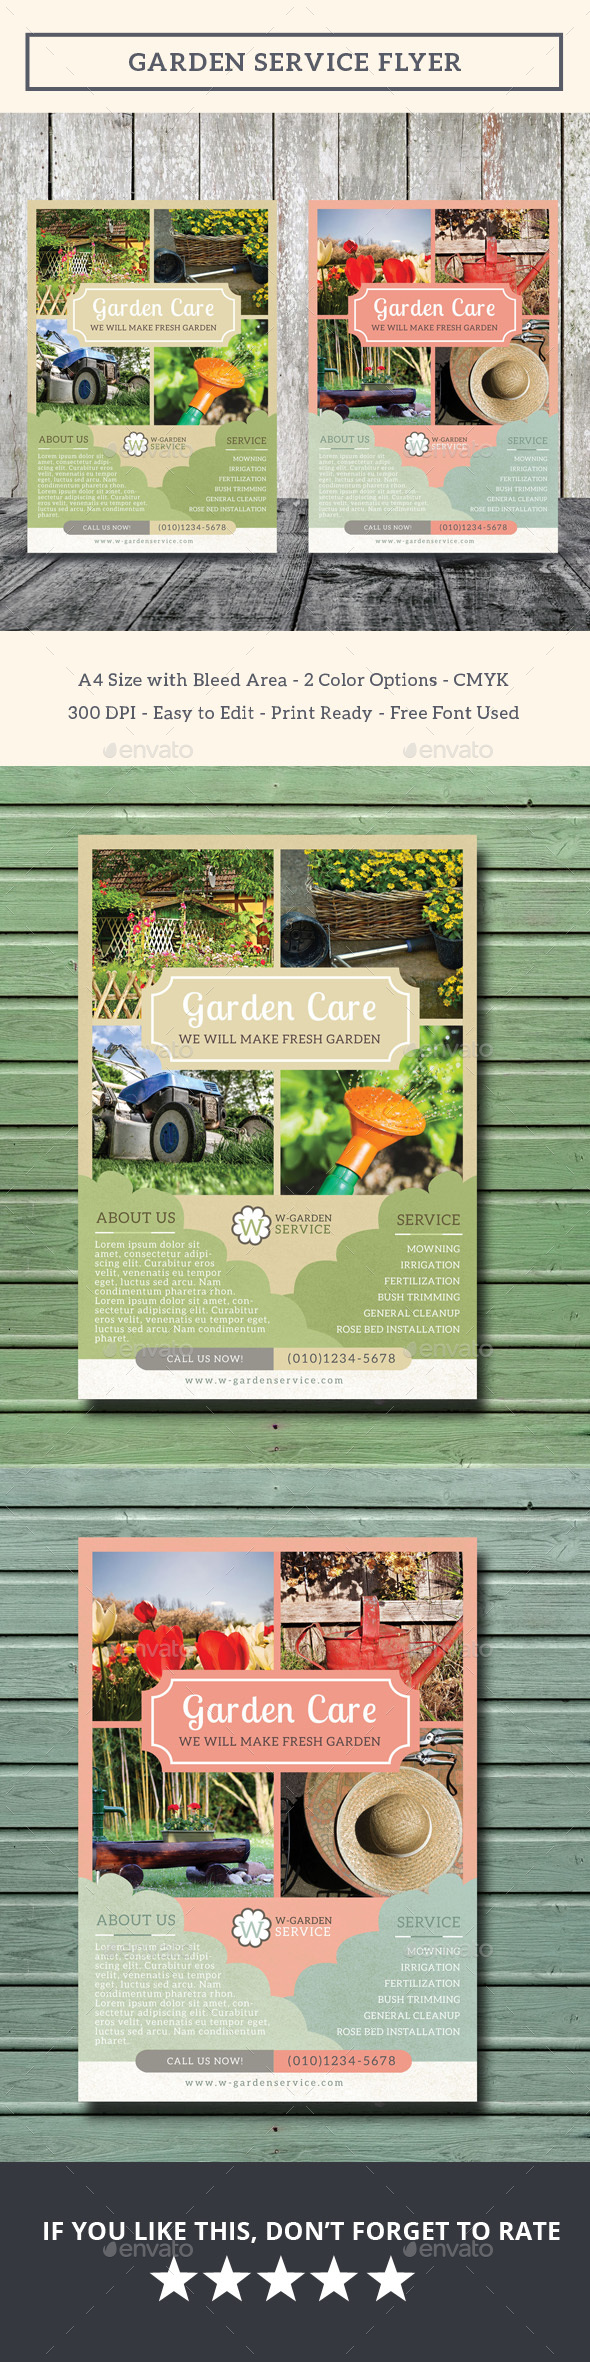 Garden Service Flyer